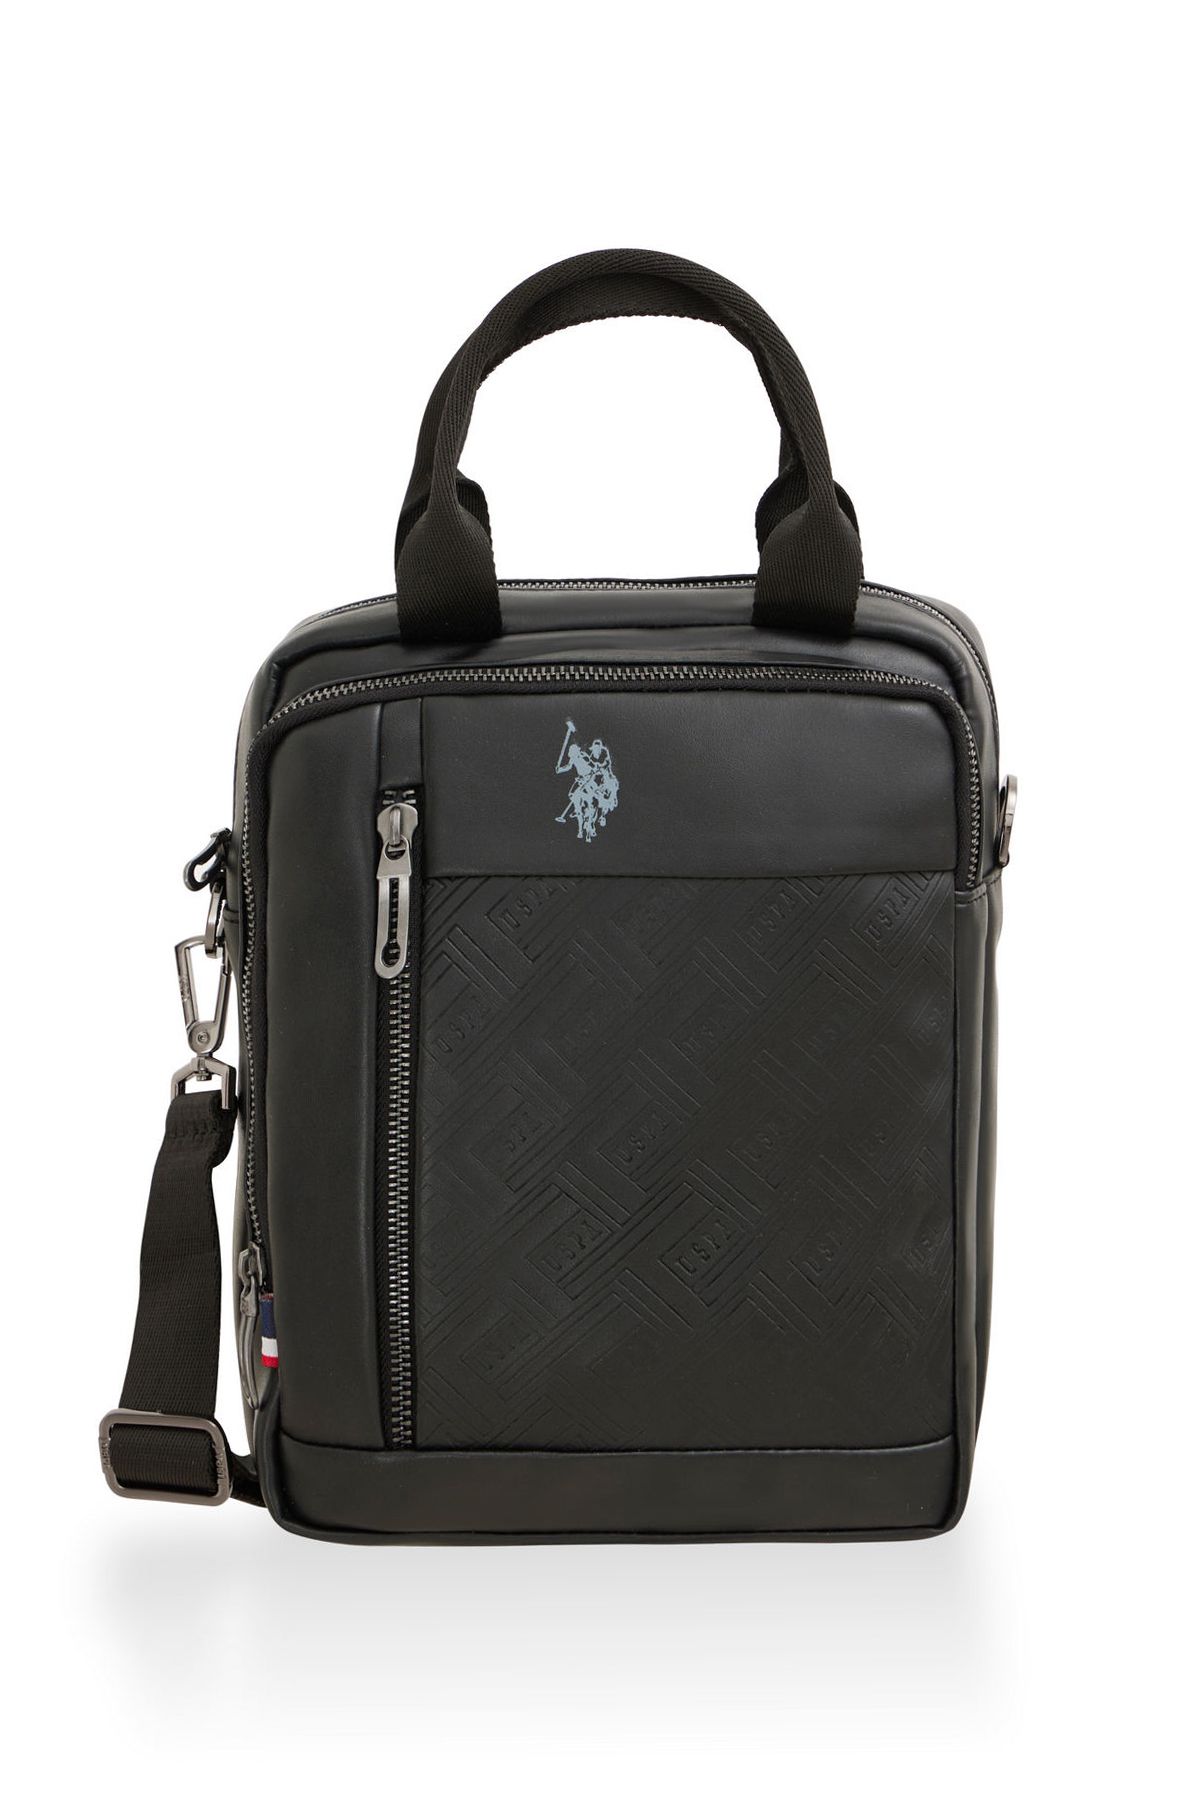 U.S. Polo Assn. U.S. Polo Assn 23645-23646-23647 El çantası Askılı çanta omuz çantası SİYAH